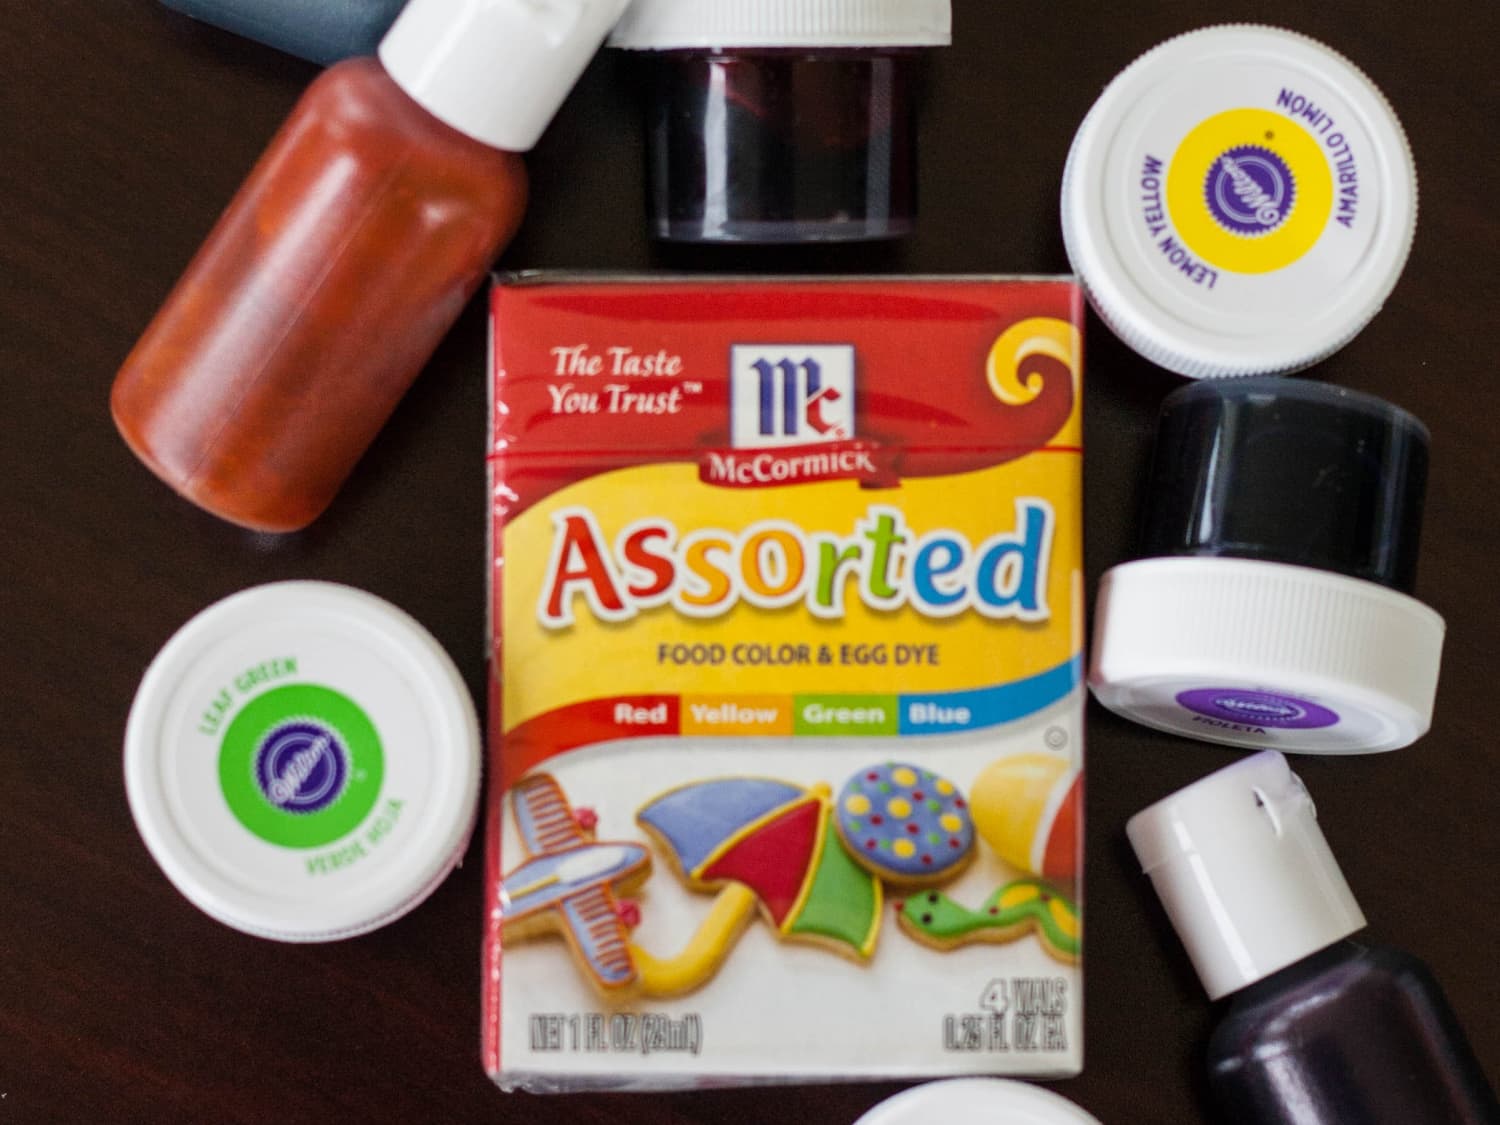 Food Coloring Liquid Set for Baking, 12 Color Food Grade Vibrant